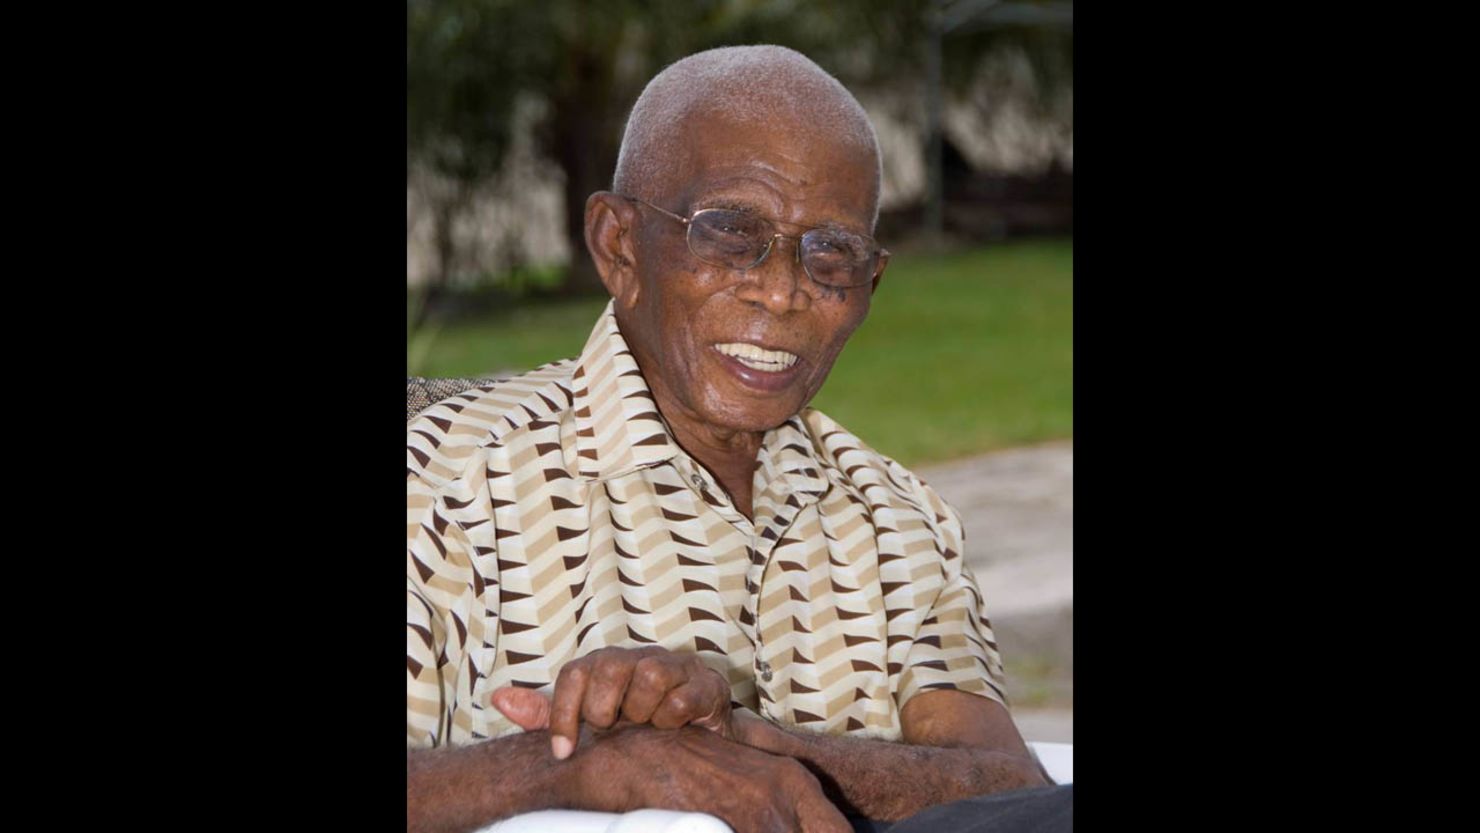 James Sisnett died in his sleep in Barbados, where he was known as "Grandad."